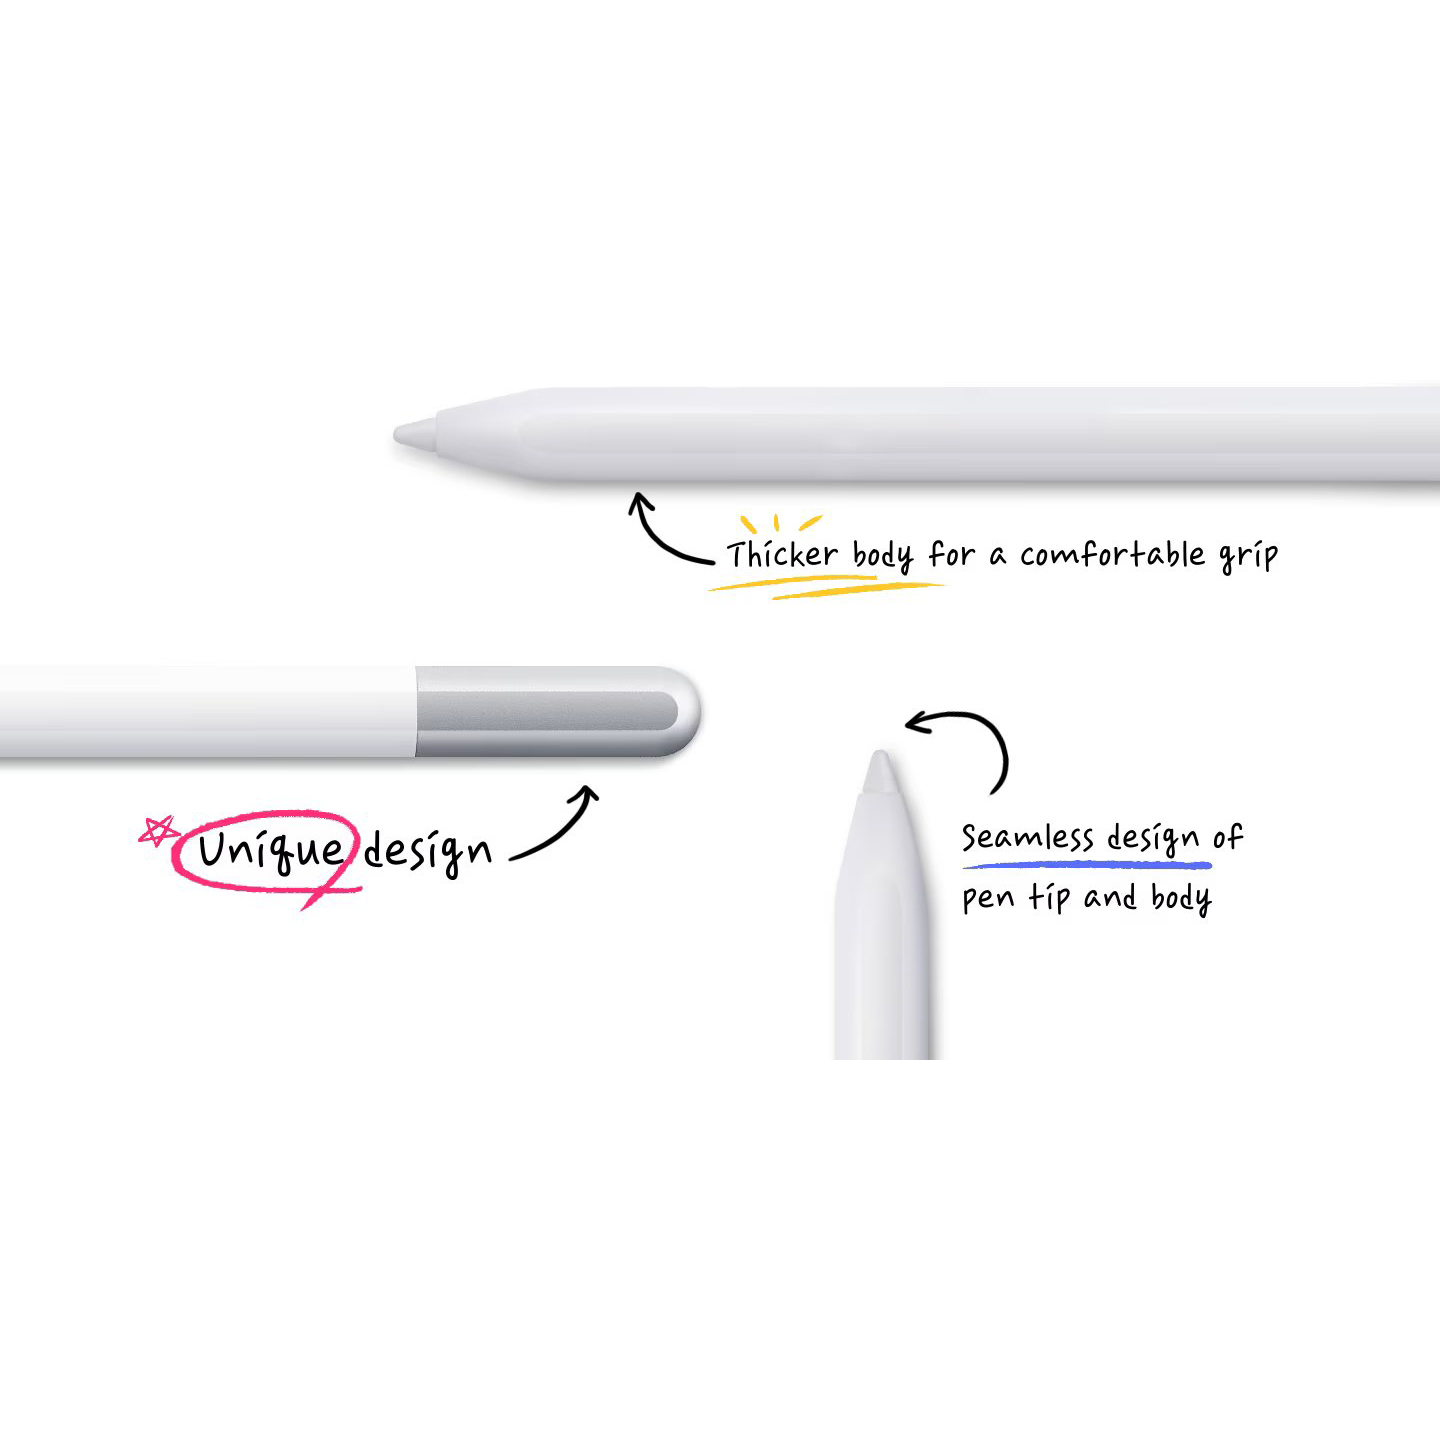 قلم لمسی سامسونگ مدل S Pen Creator Edition EJ-P5600